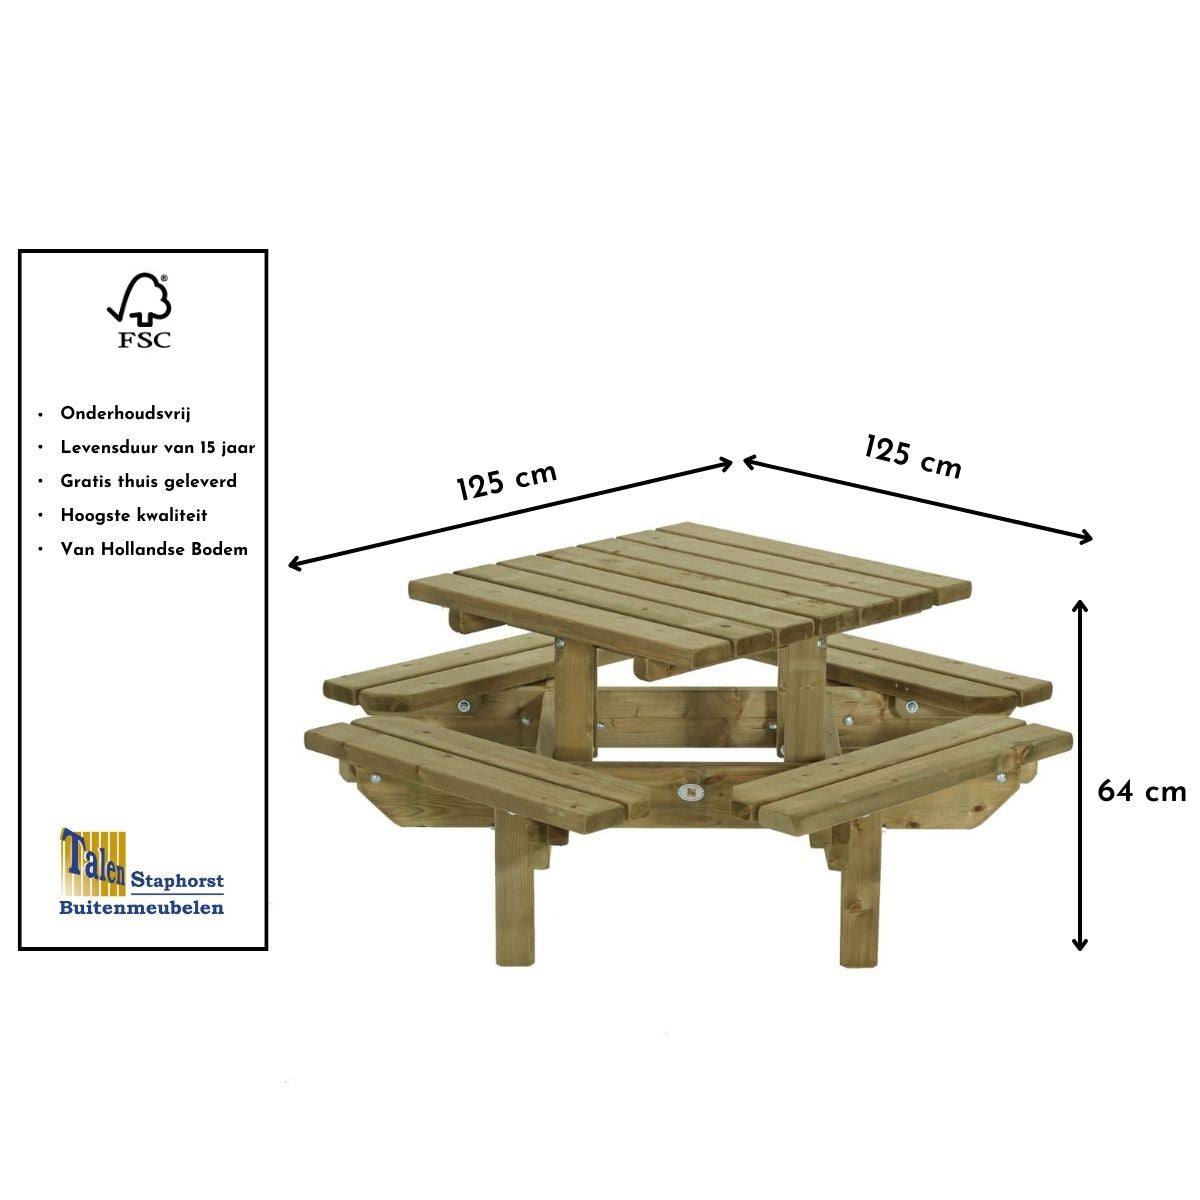 picknick tafel vierkant voor kinderen van hout gaat 15 jaar mee 